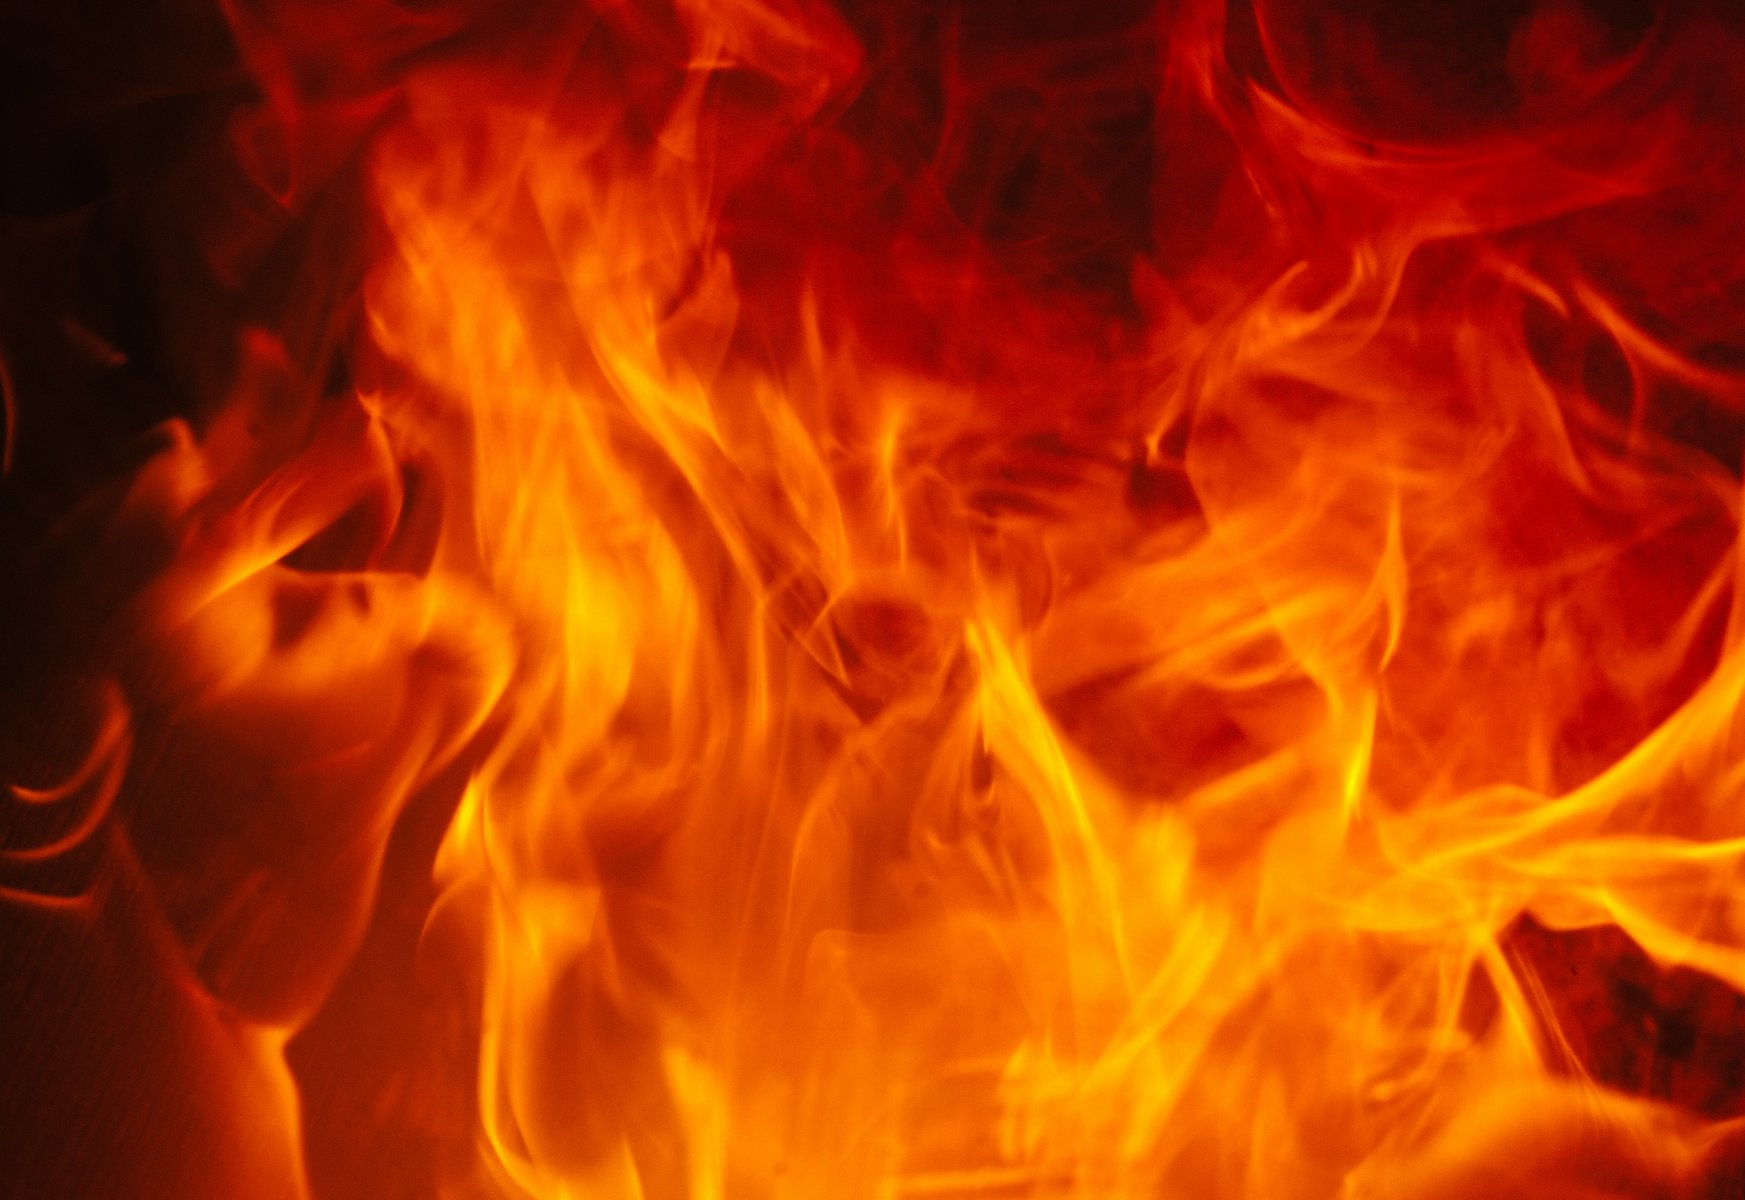 Три человека пострадали при пожаре в Богородском городском округе 